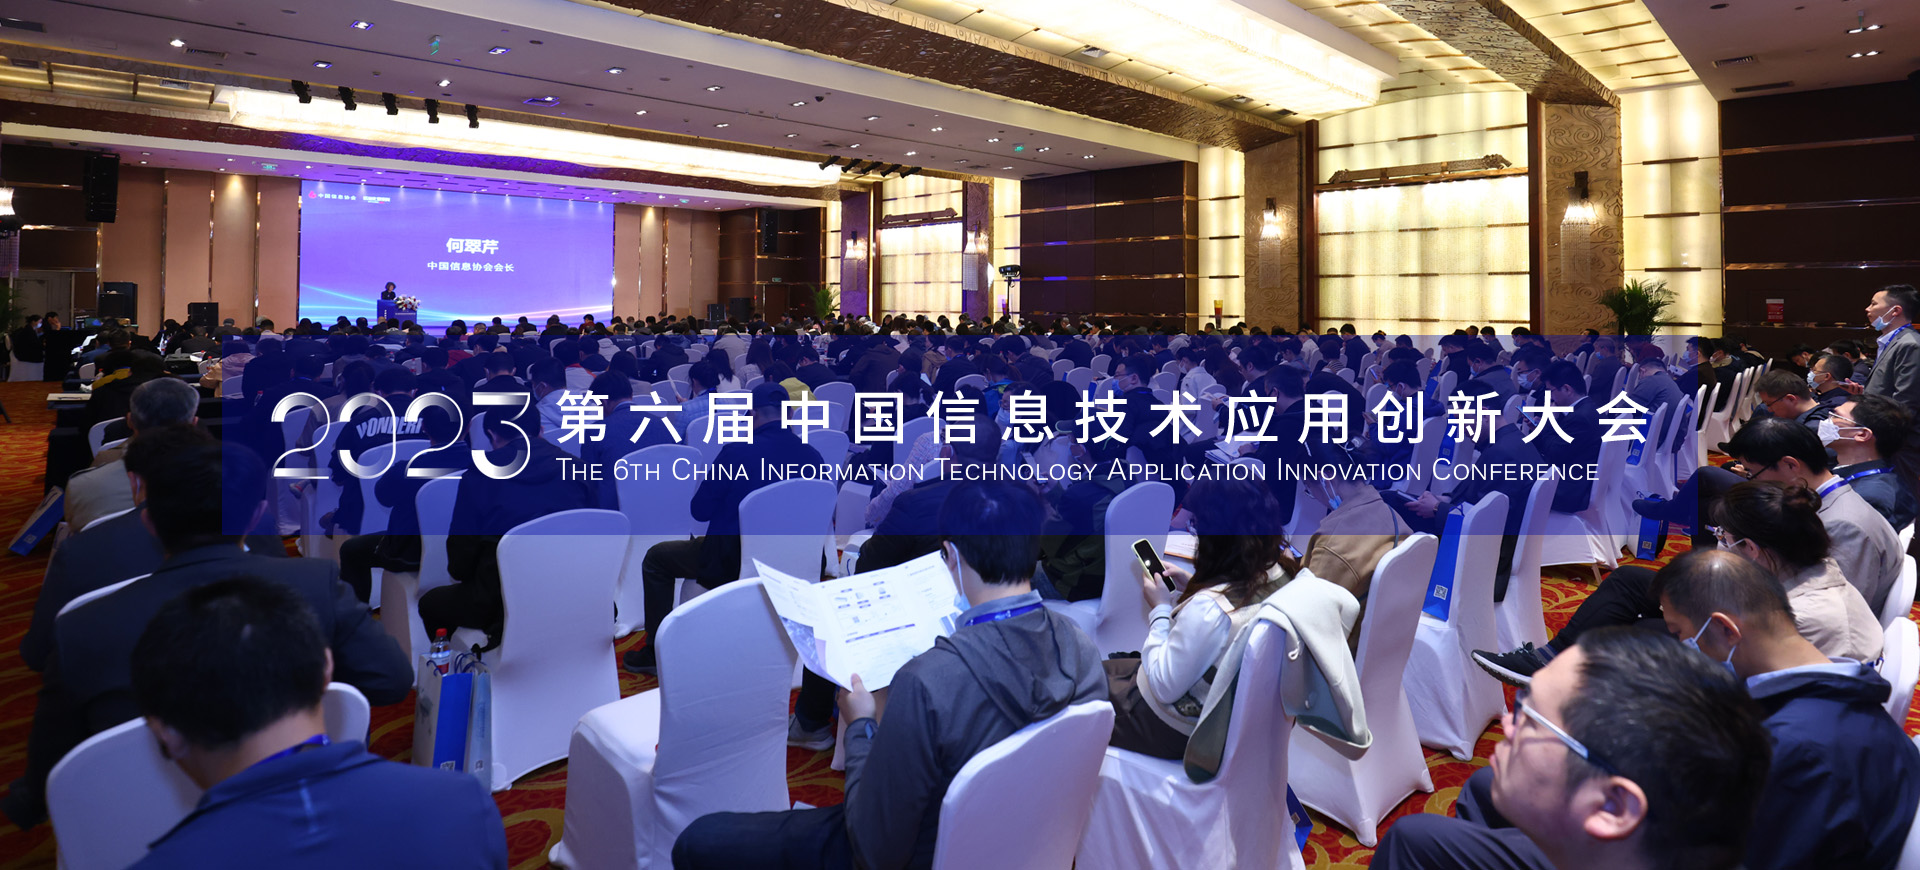 2023第六届中国信息技术应用创新大会